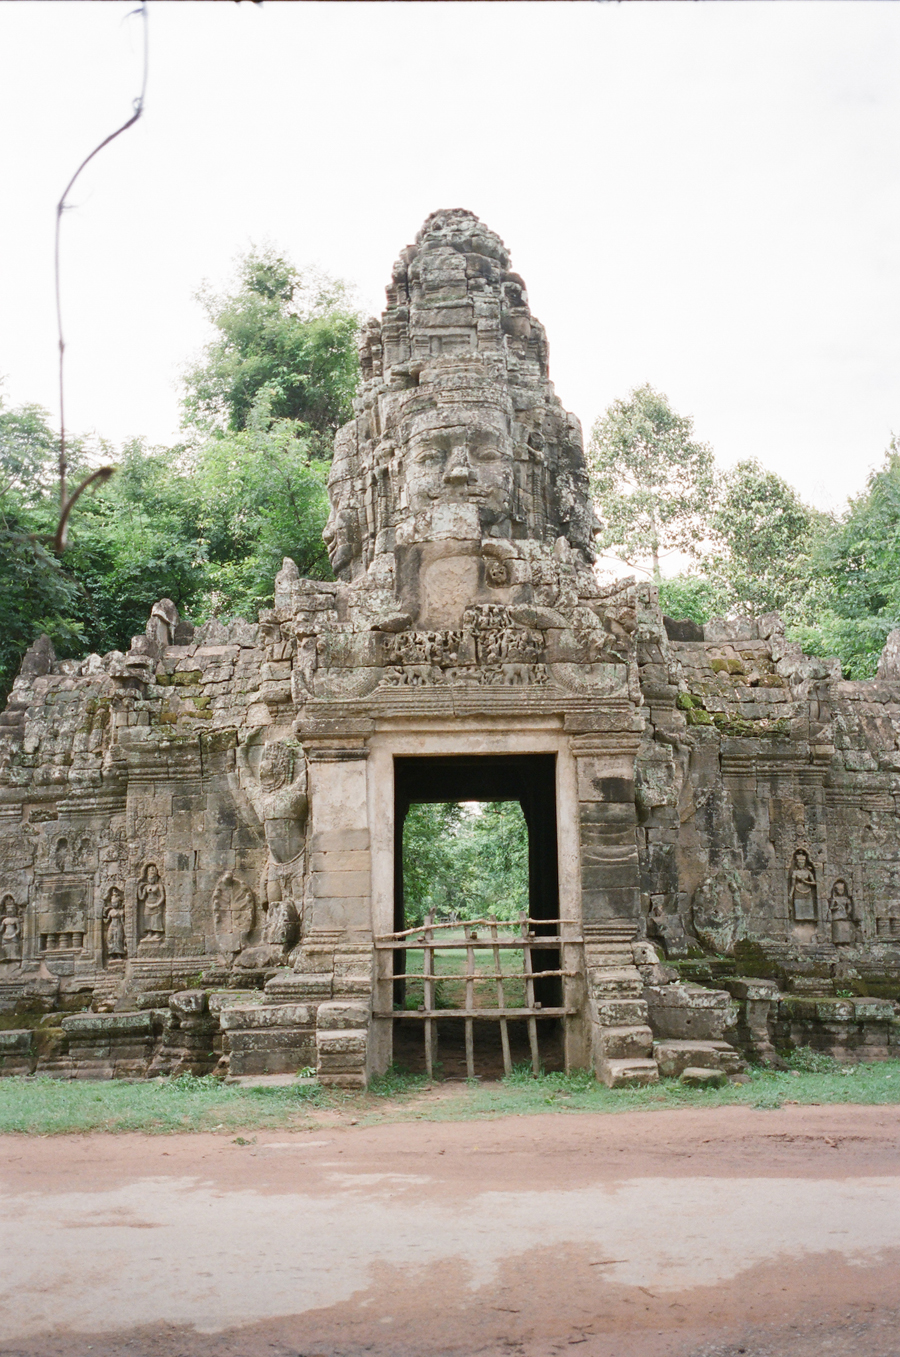 Portrait at Angkor Wat